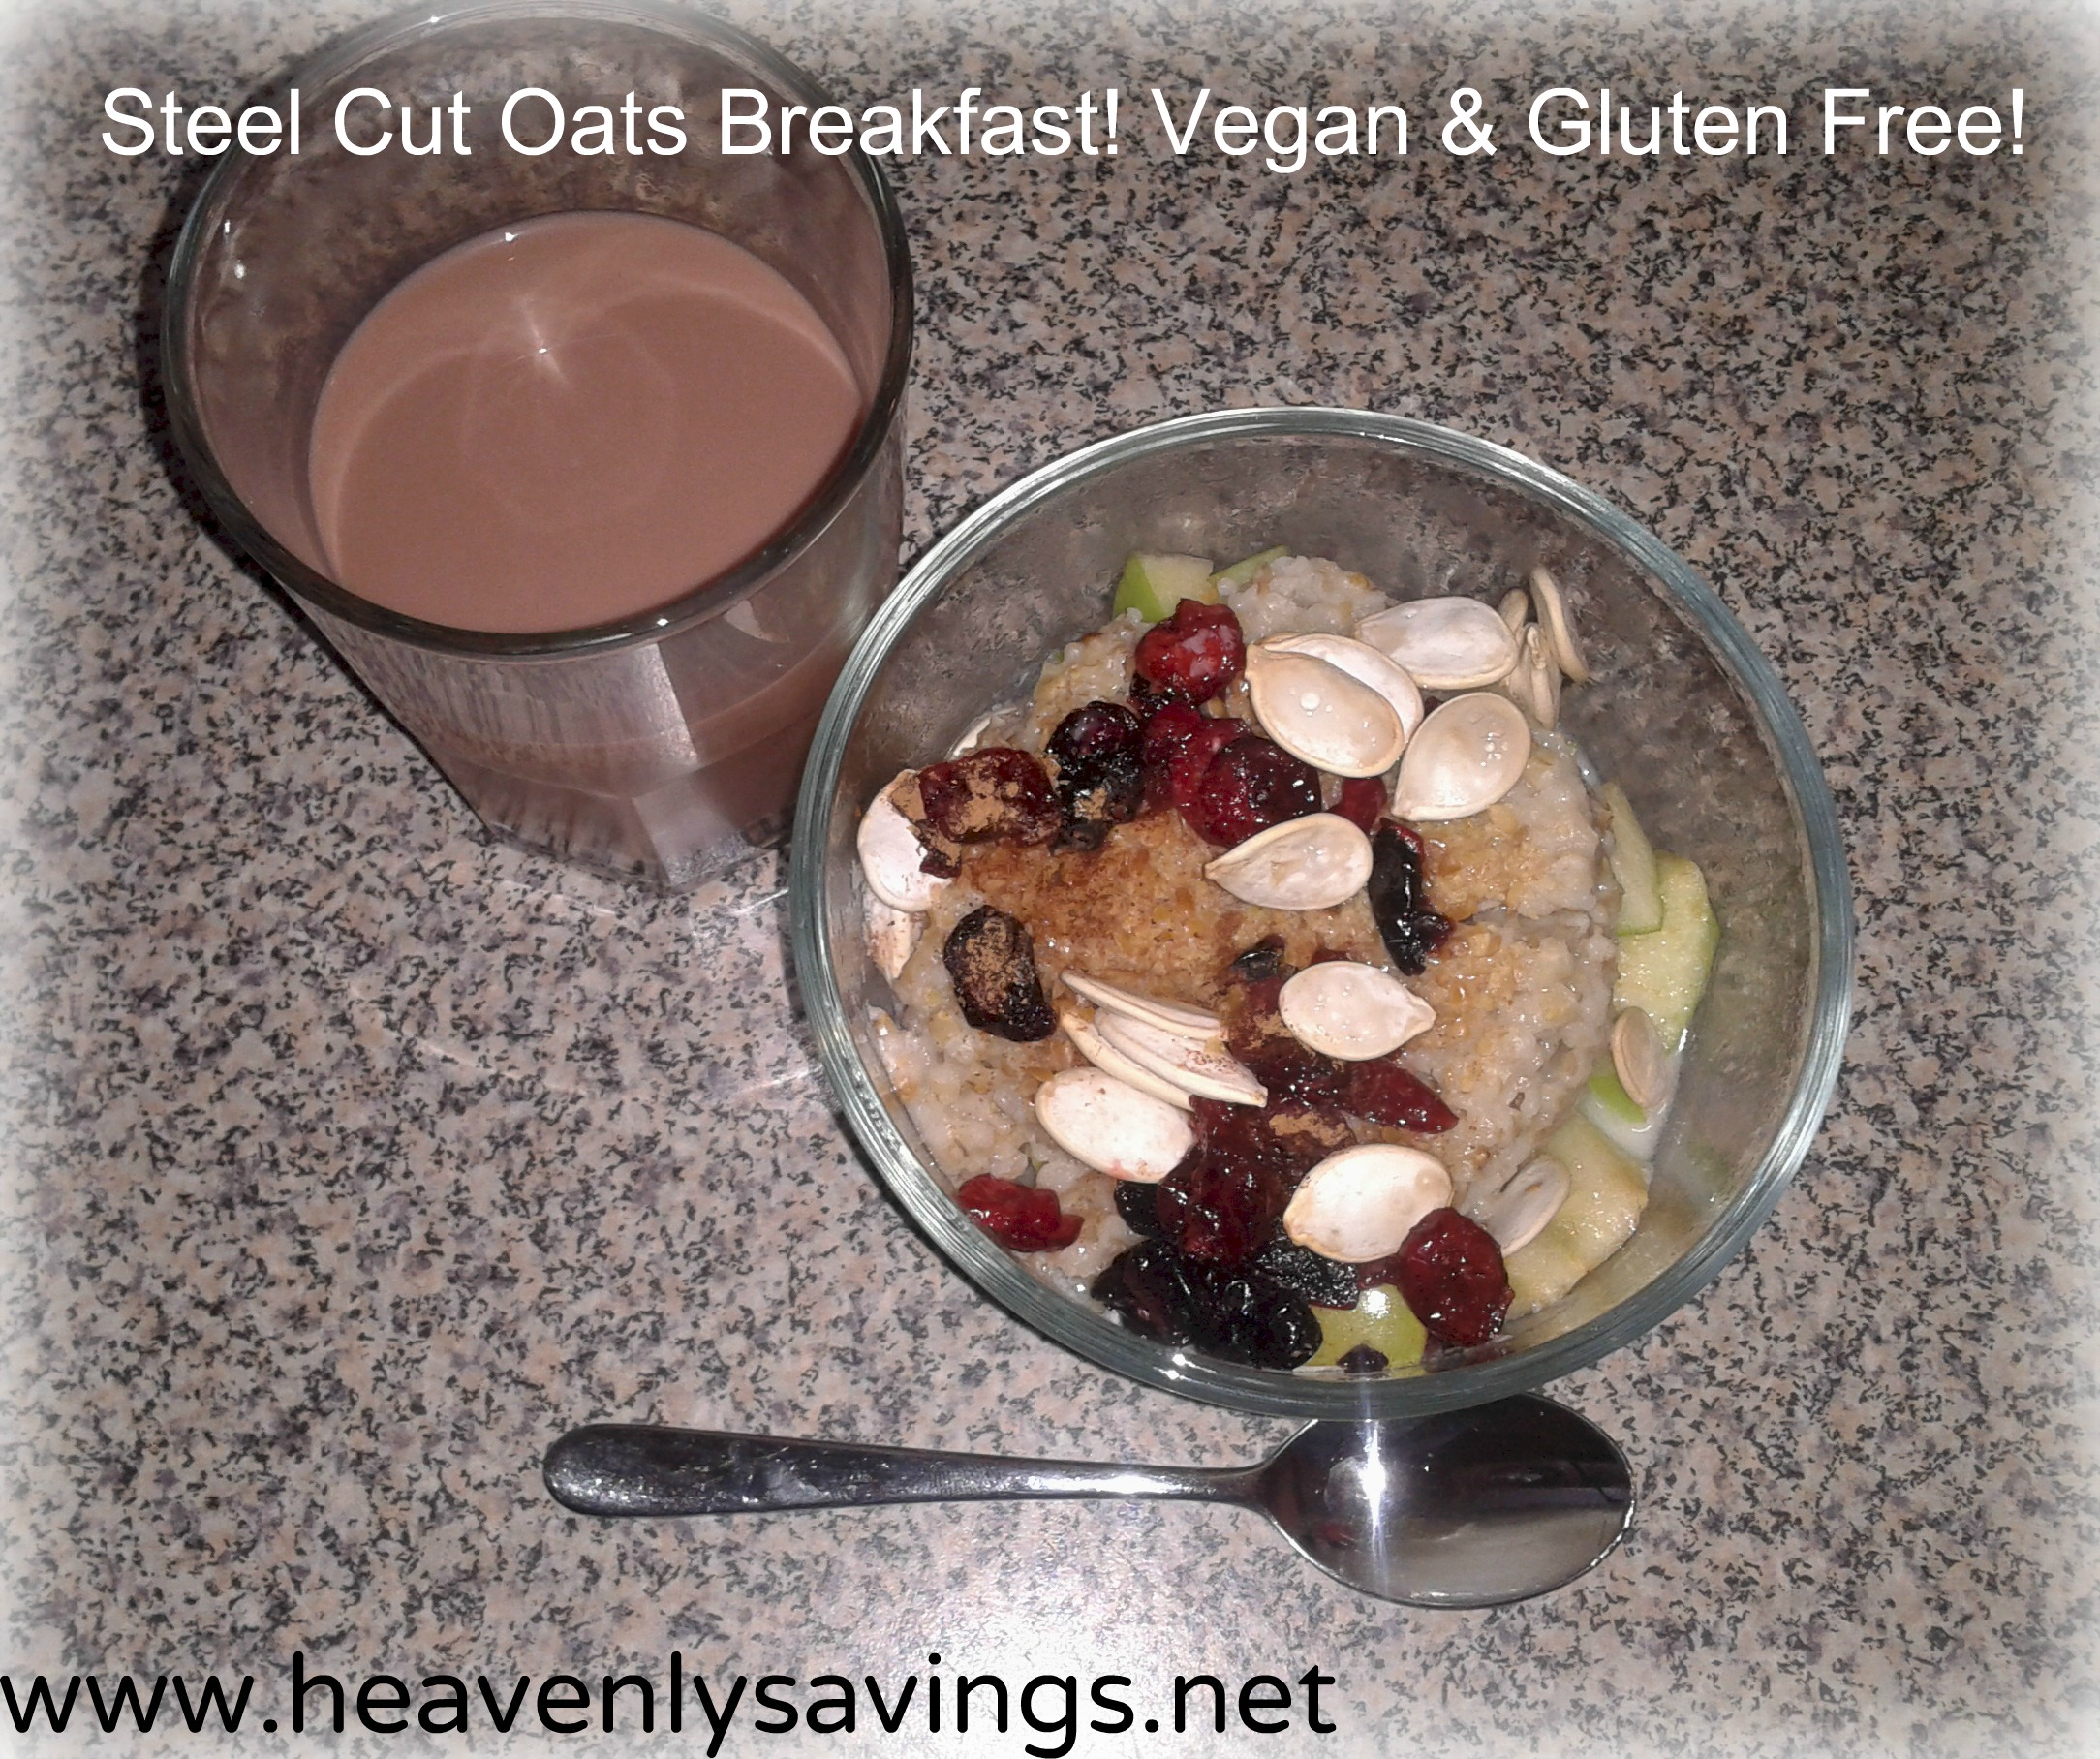 Steel Cut Oats Breakfast~ Gluten Free & Vegan~ My Favorite Breakfast!